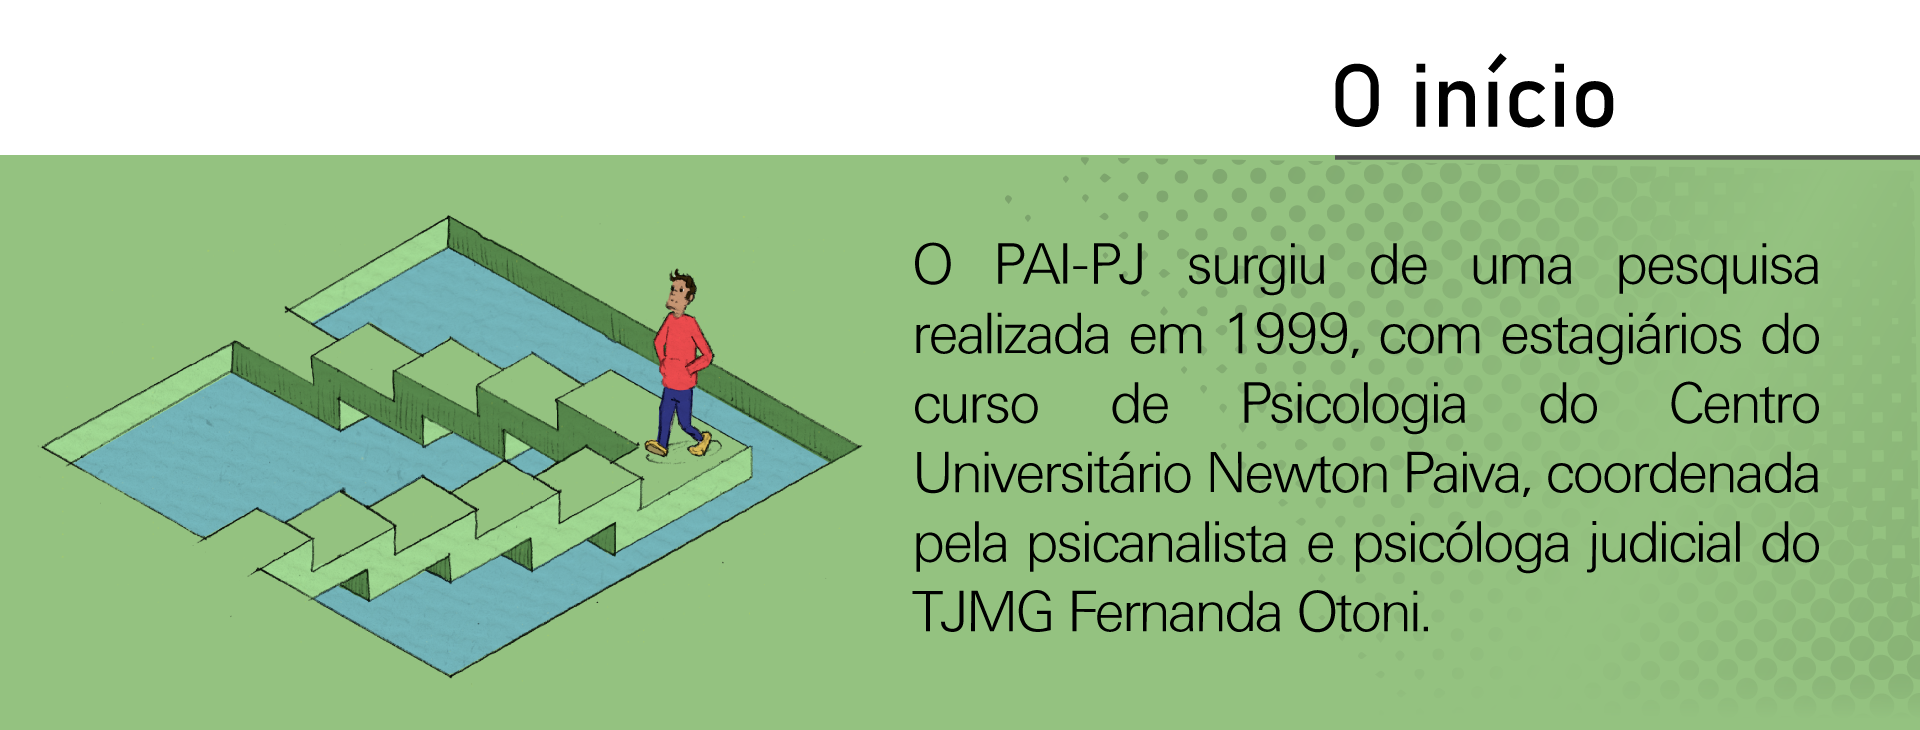 O PAI-PJ surgiu de uma pesquisa realizada em 1999, com estagiários do curso de Psicologia do Centro Universitário Newton Paiva, coordenada pela psicanalista e psicóloga judicial do TJMG Fernanda Otoni.